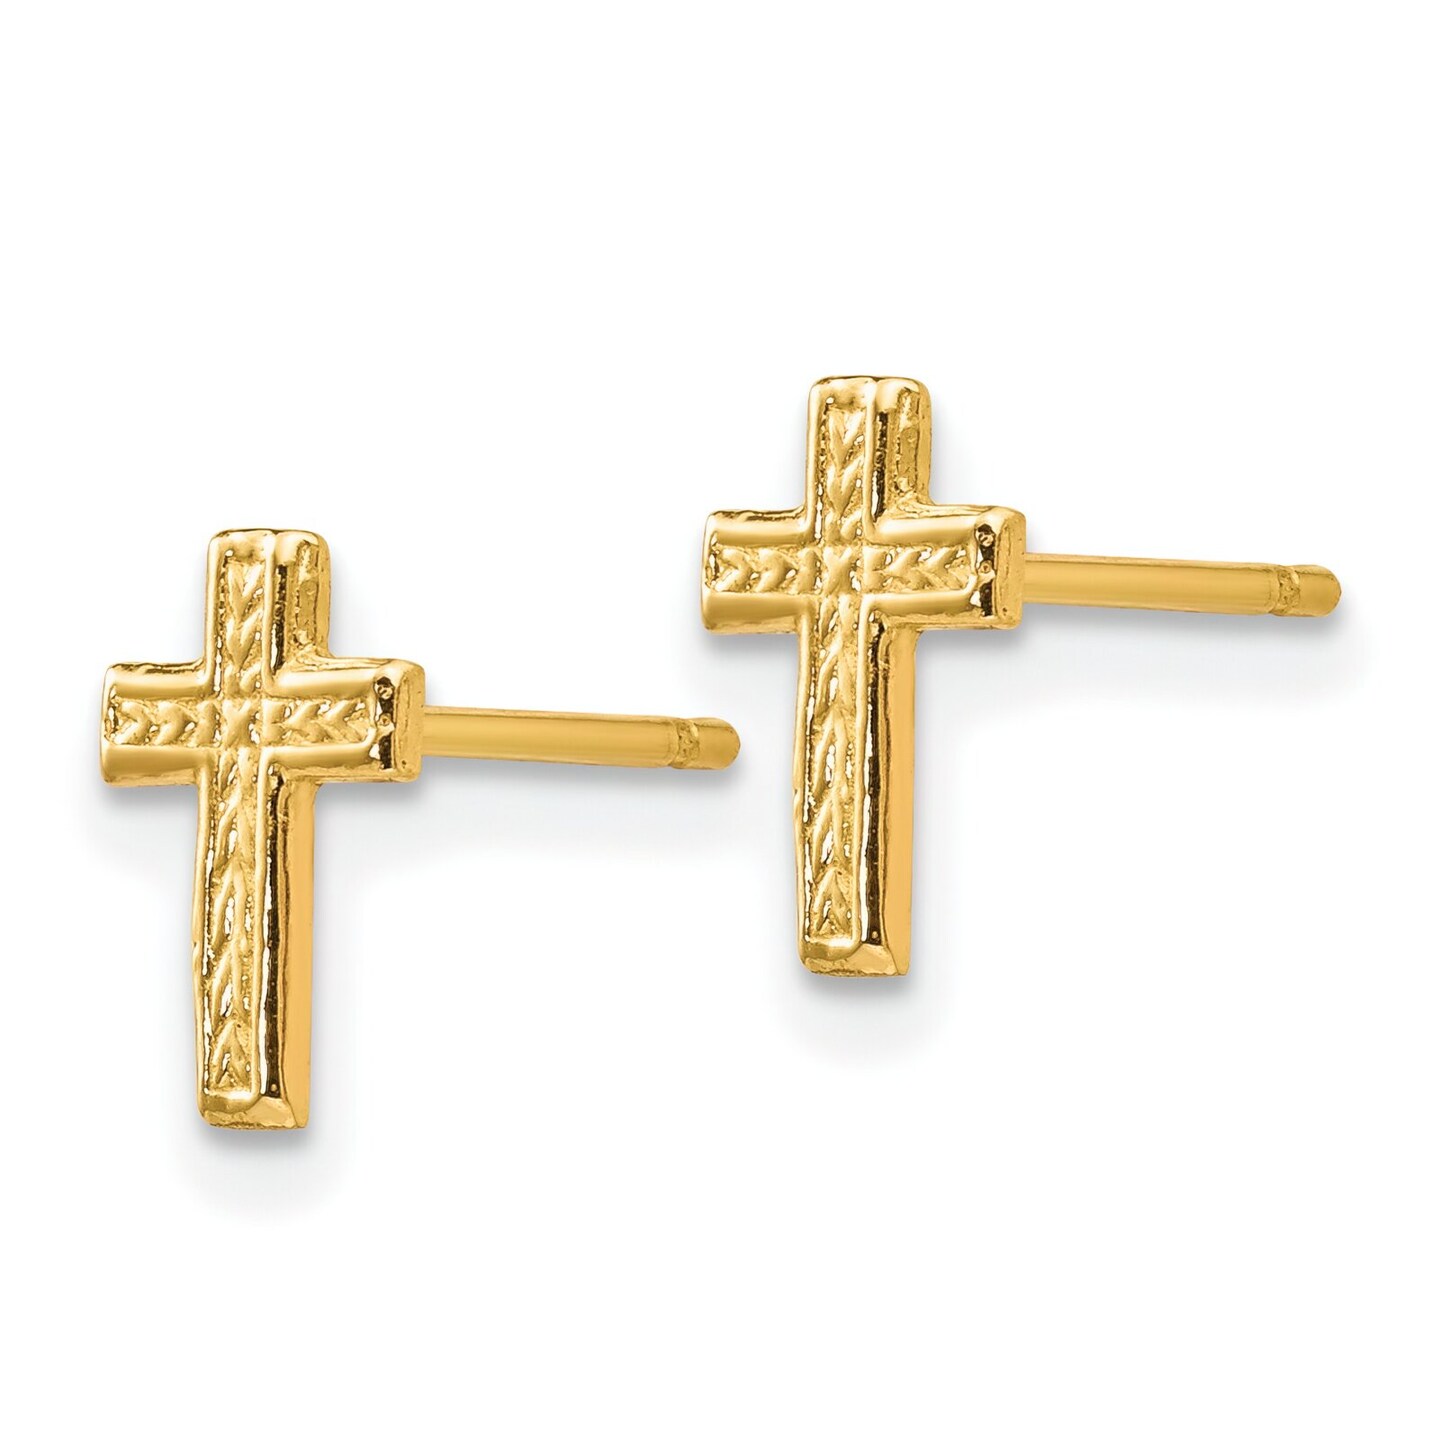 14K Yellow Gold Cross Post Earrings Earring Jewelry 9mm x 6mm